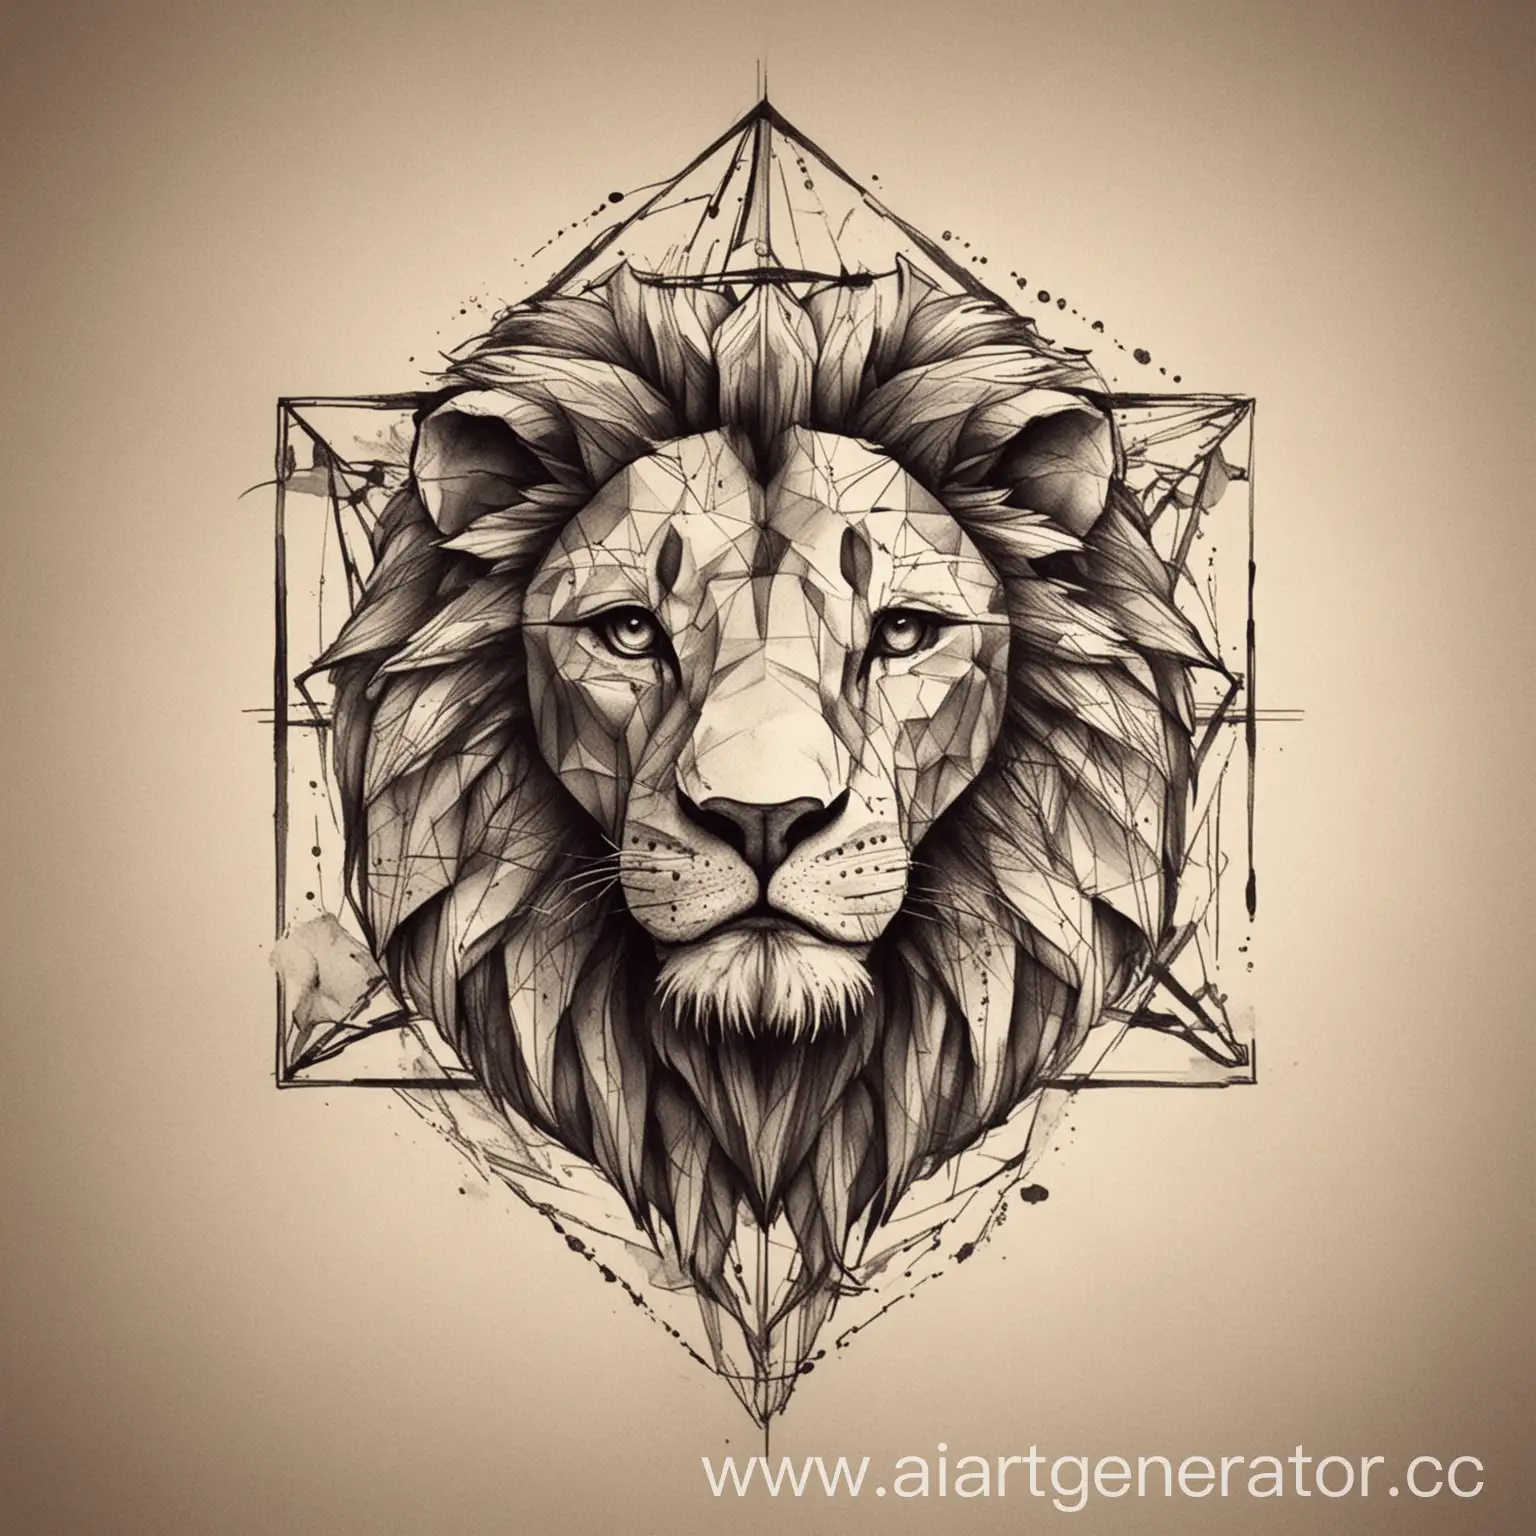 Minimalist-Geometric-Lion-Tattoo-Sketch